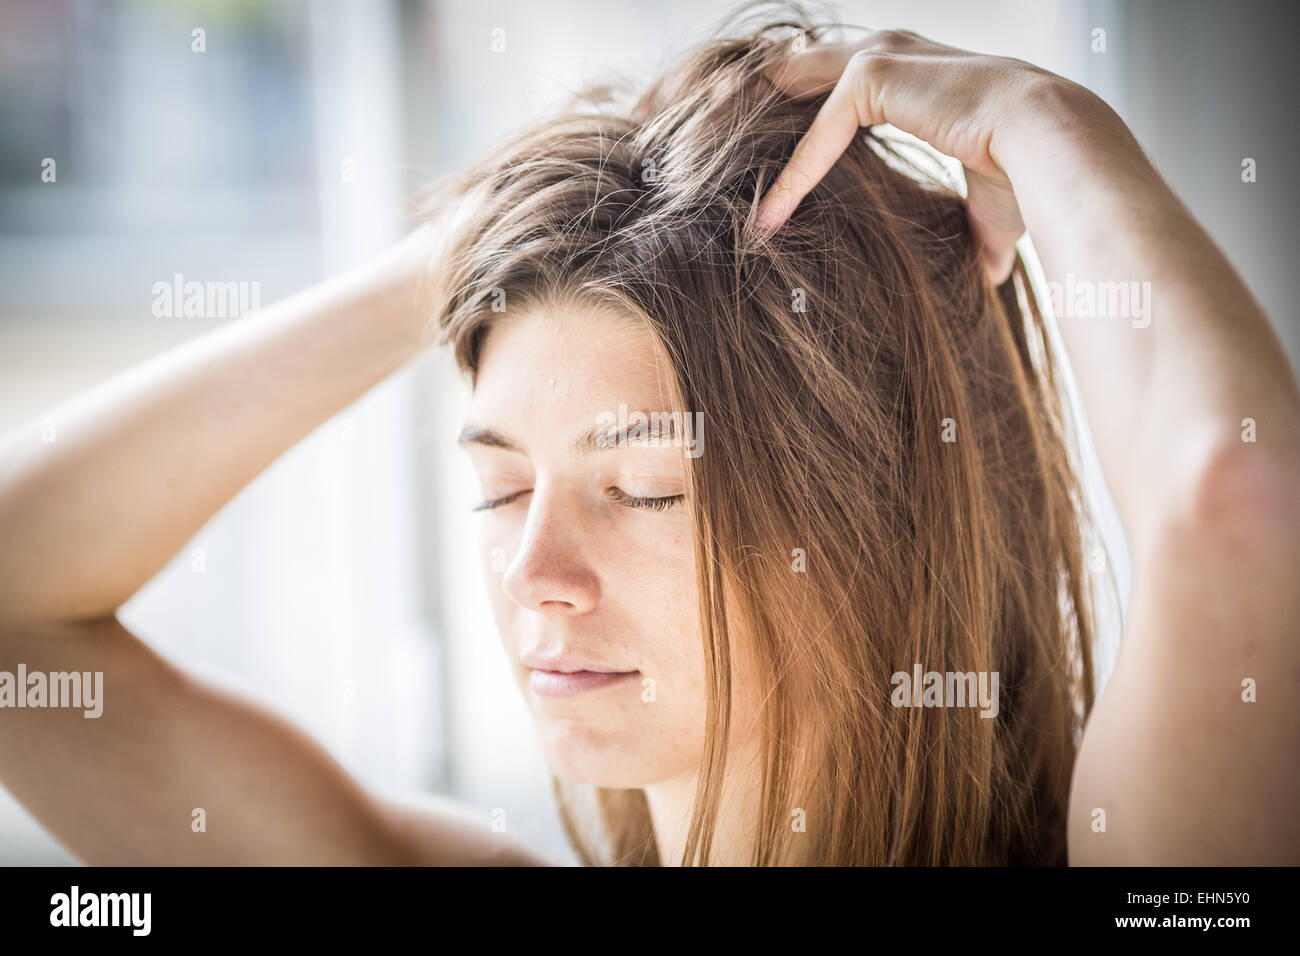 Frau massiert ihre Kopfhaut. Stockfoto